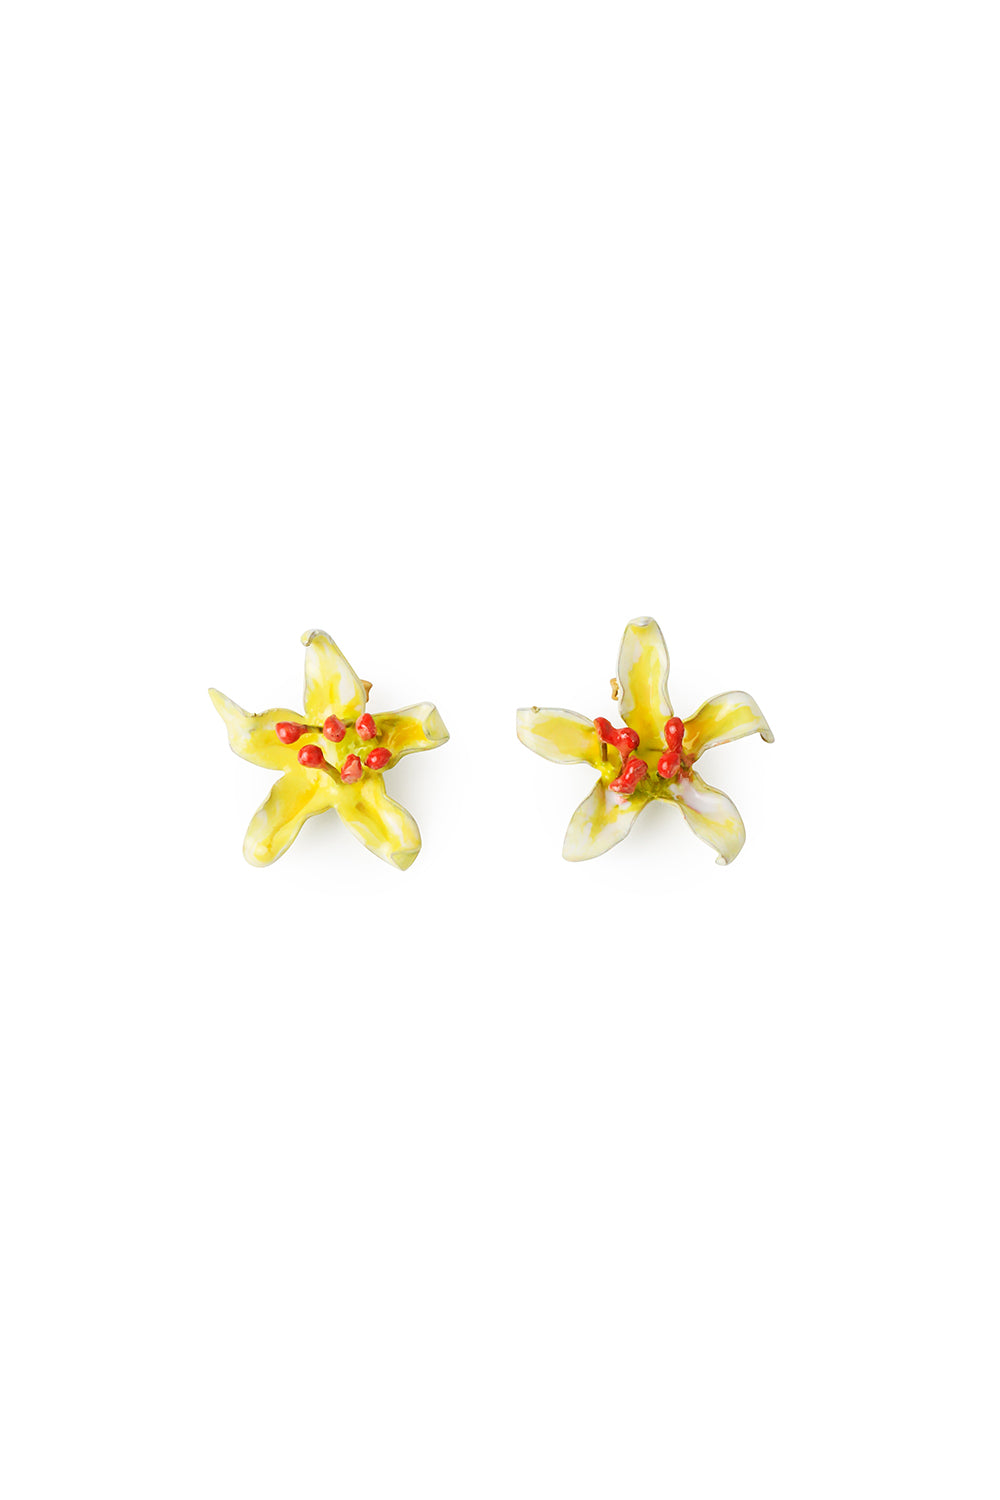 Petite boucle d'oreille Flowers en or mat Plaqué or 24 carats